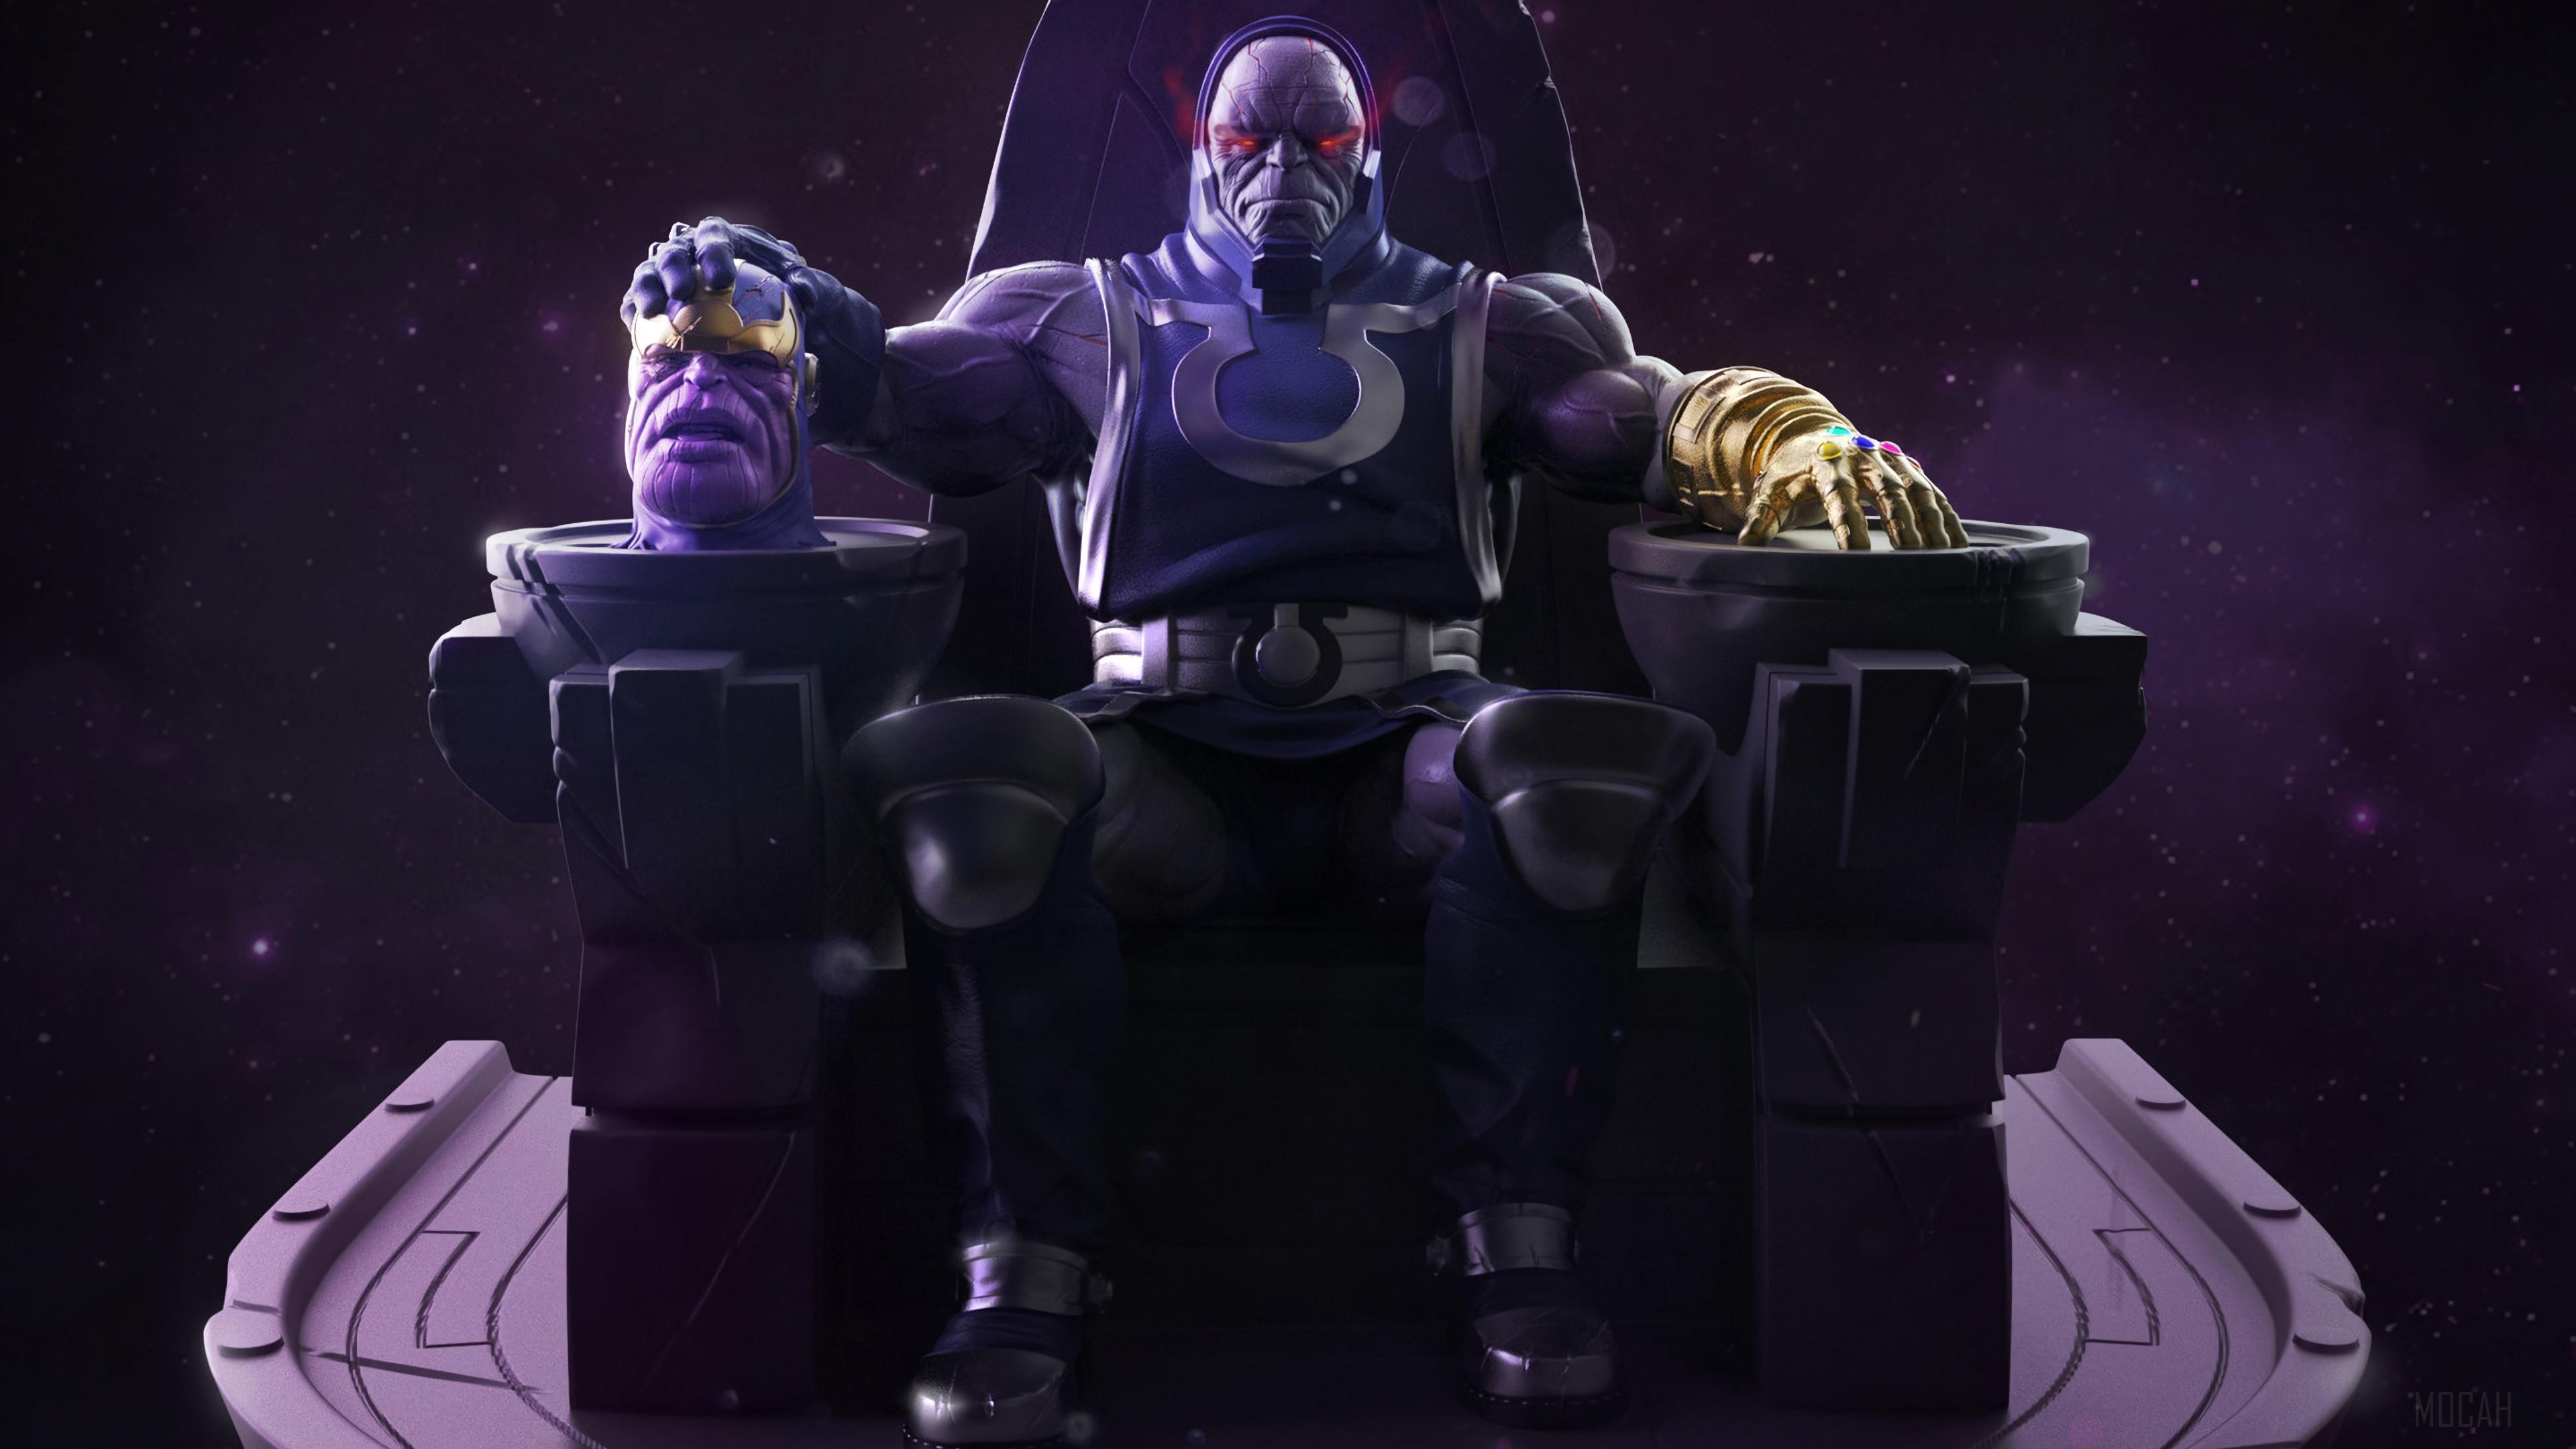 HD wallpaper, Darkseid Vs Thanos 4K